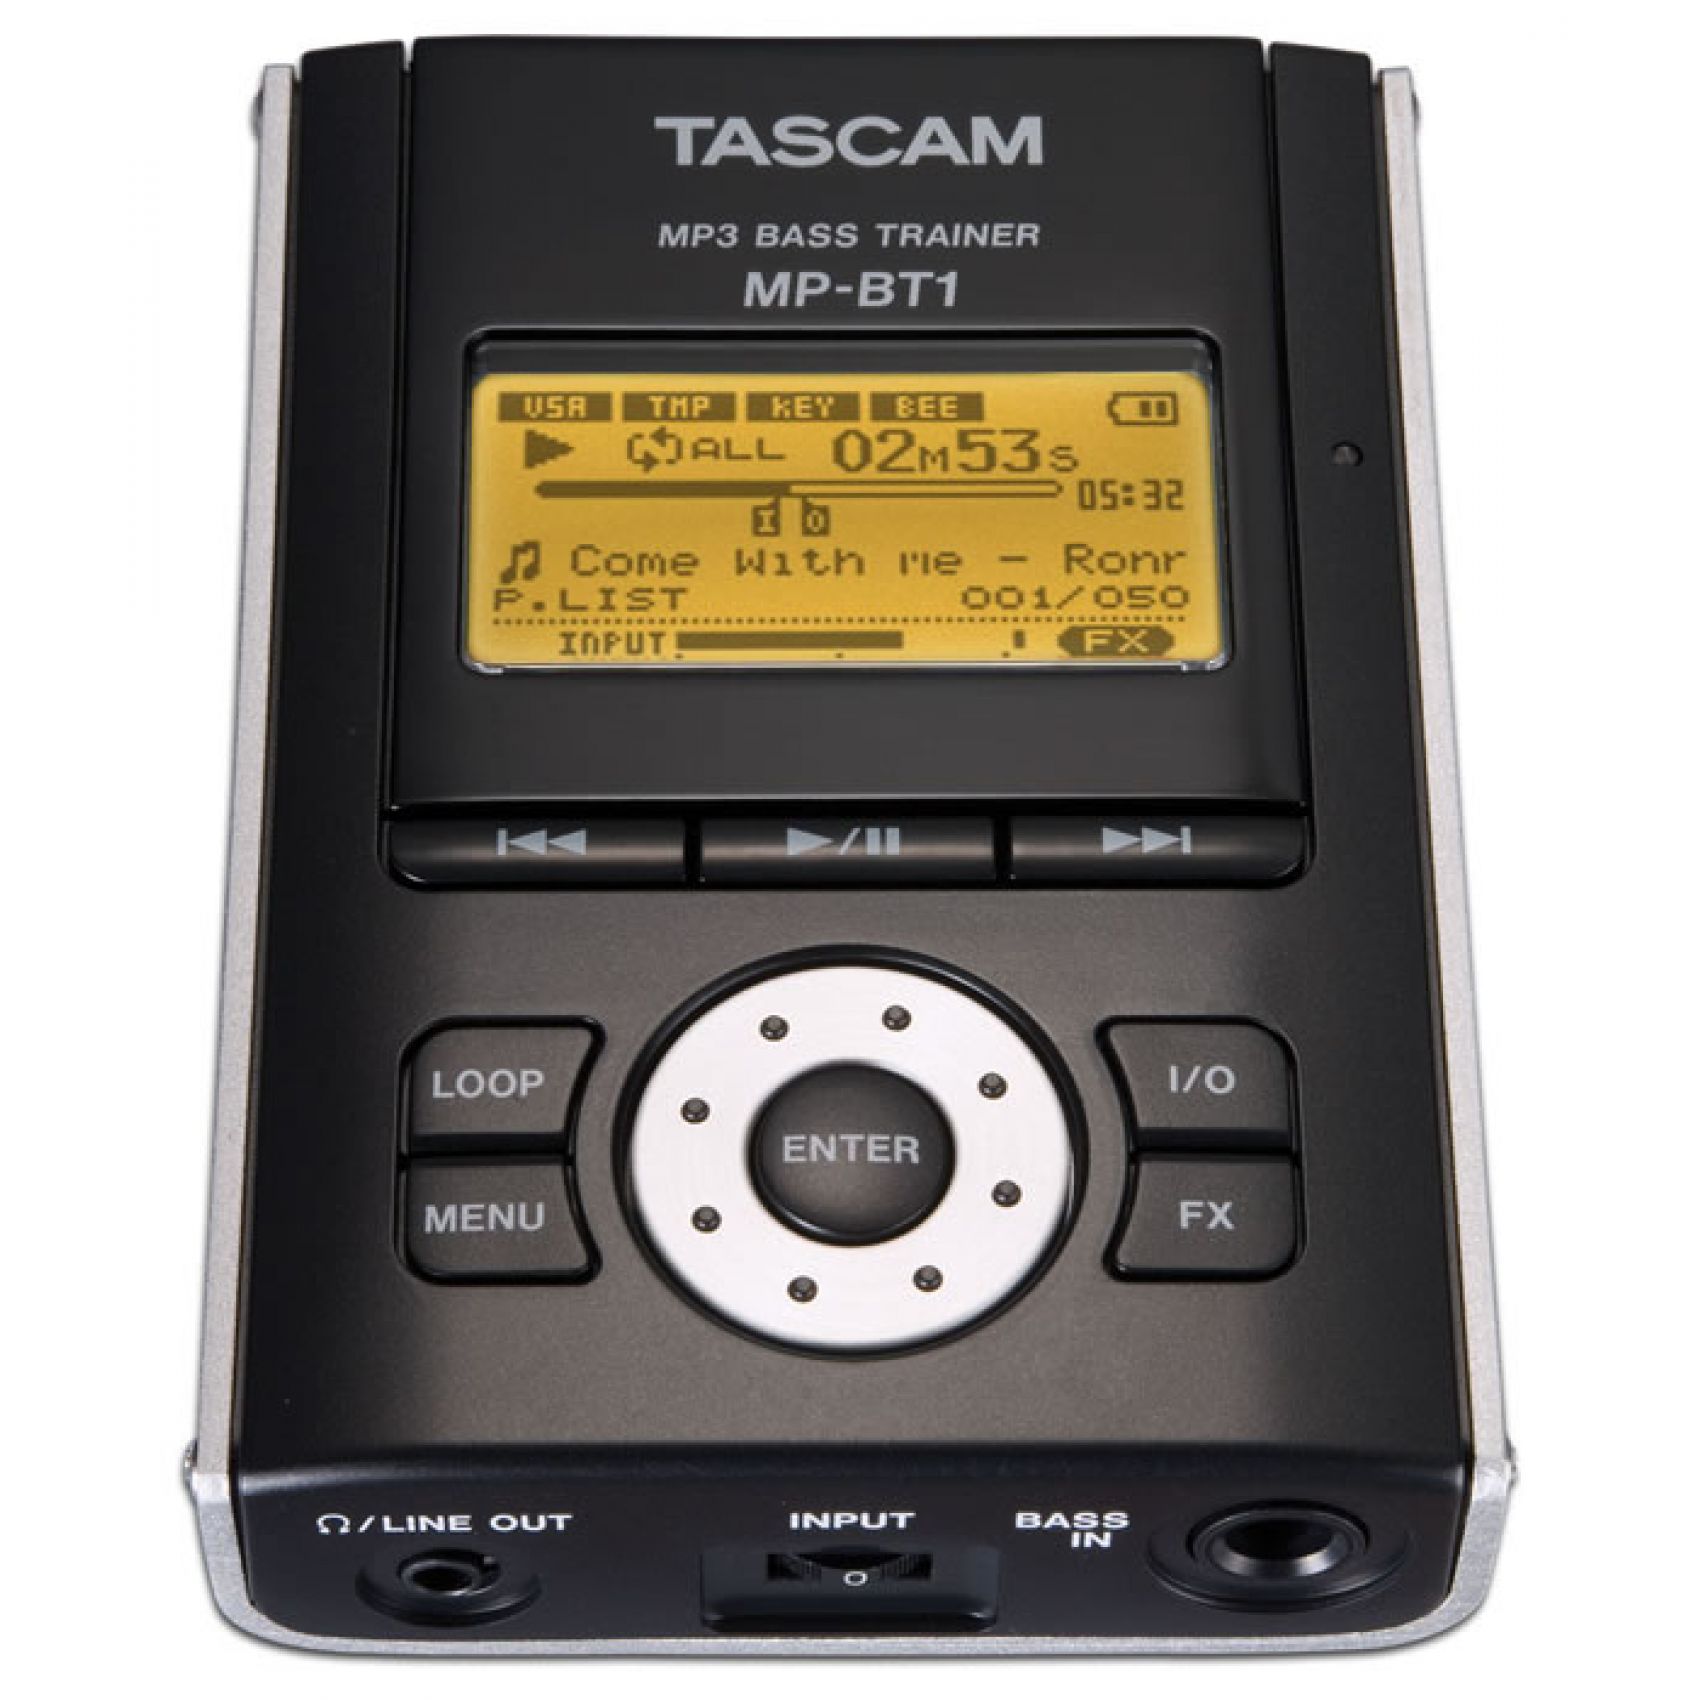 TASCAM MP BT1 MP3 Bass Trainer - LETTORE MP3 PER BASSISTI